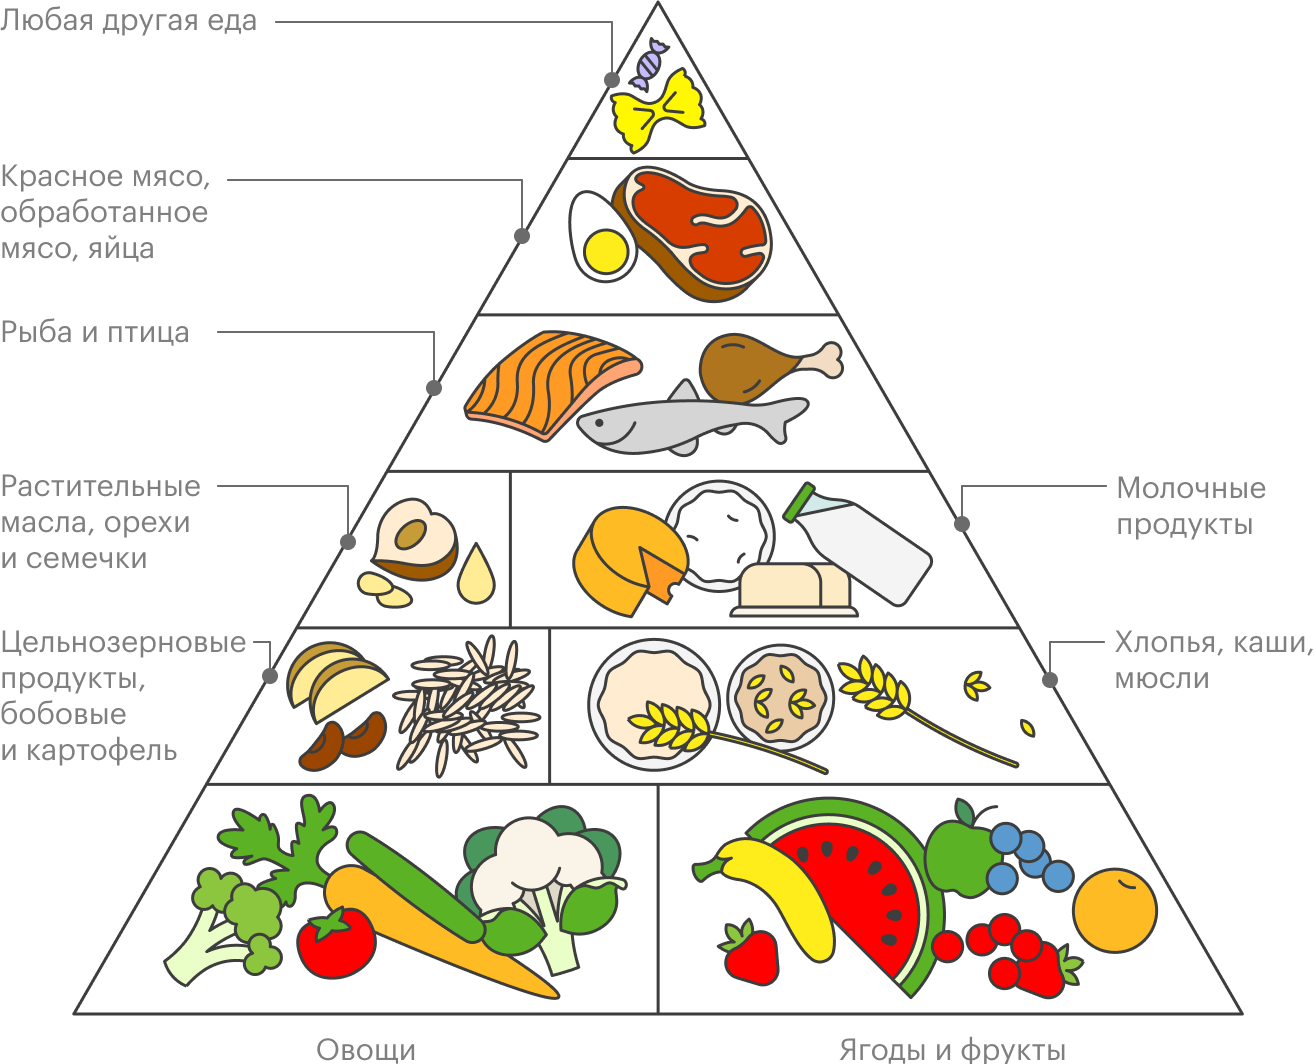 Финский треугольник здорового питания допускает употребление любой другой еды, если рацион сбалансирован. Источник: ruokavirasto.fi